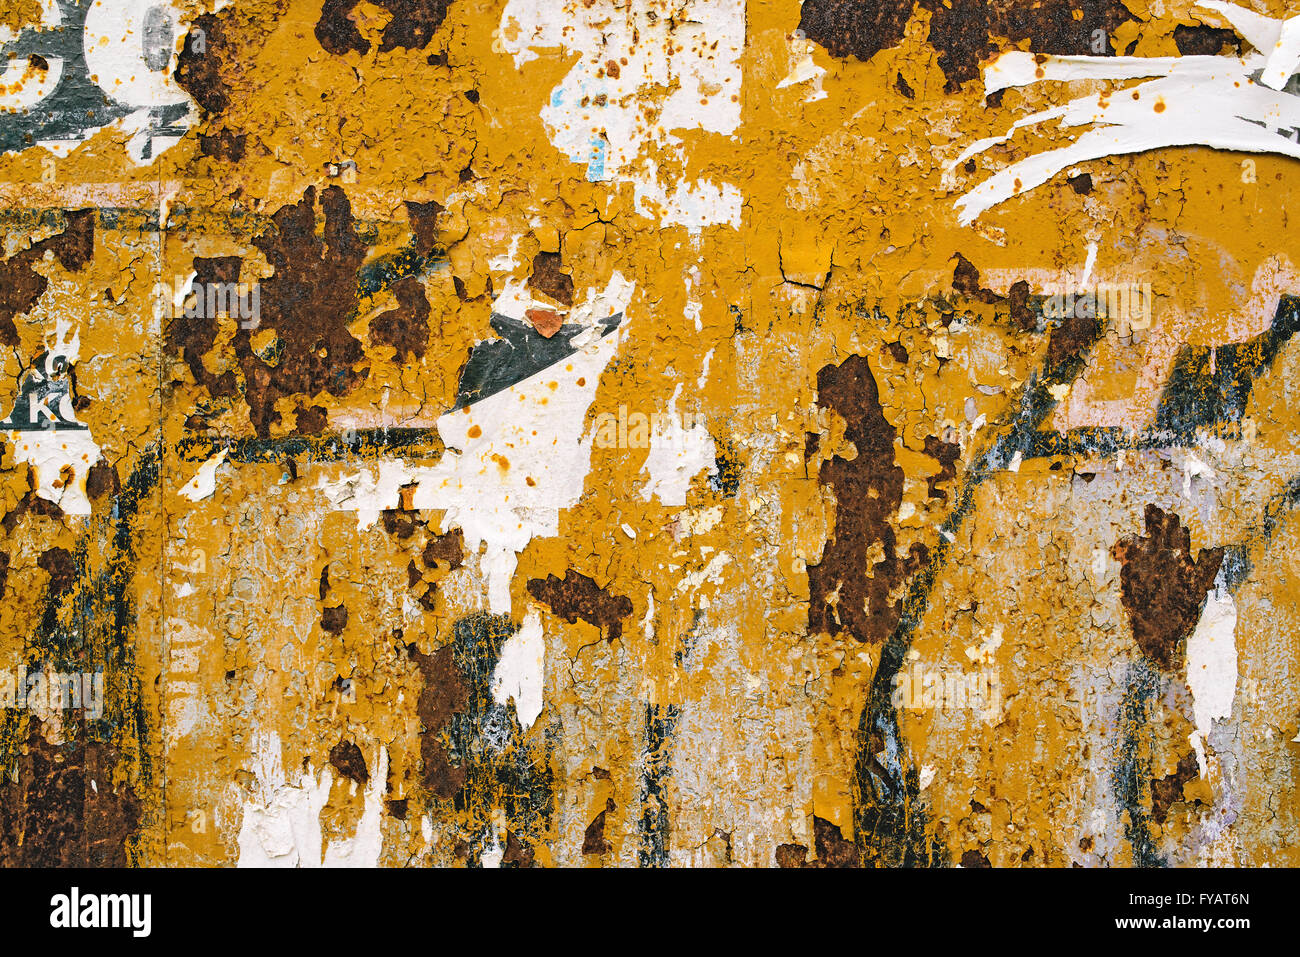 Plaque de métal corrodé affiche de texture et morceaux de papier, abstract background Banque D'Images